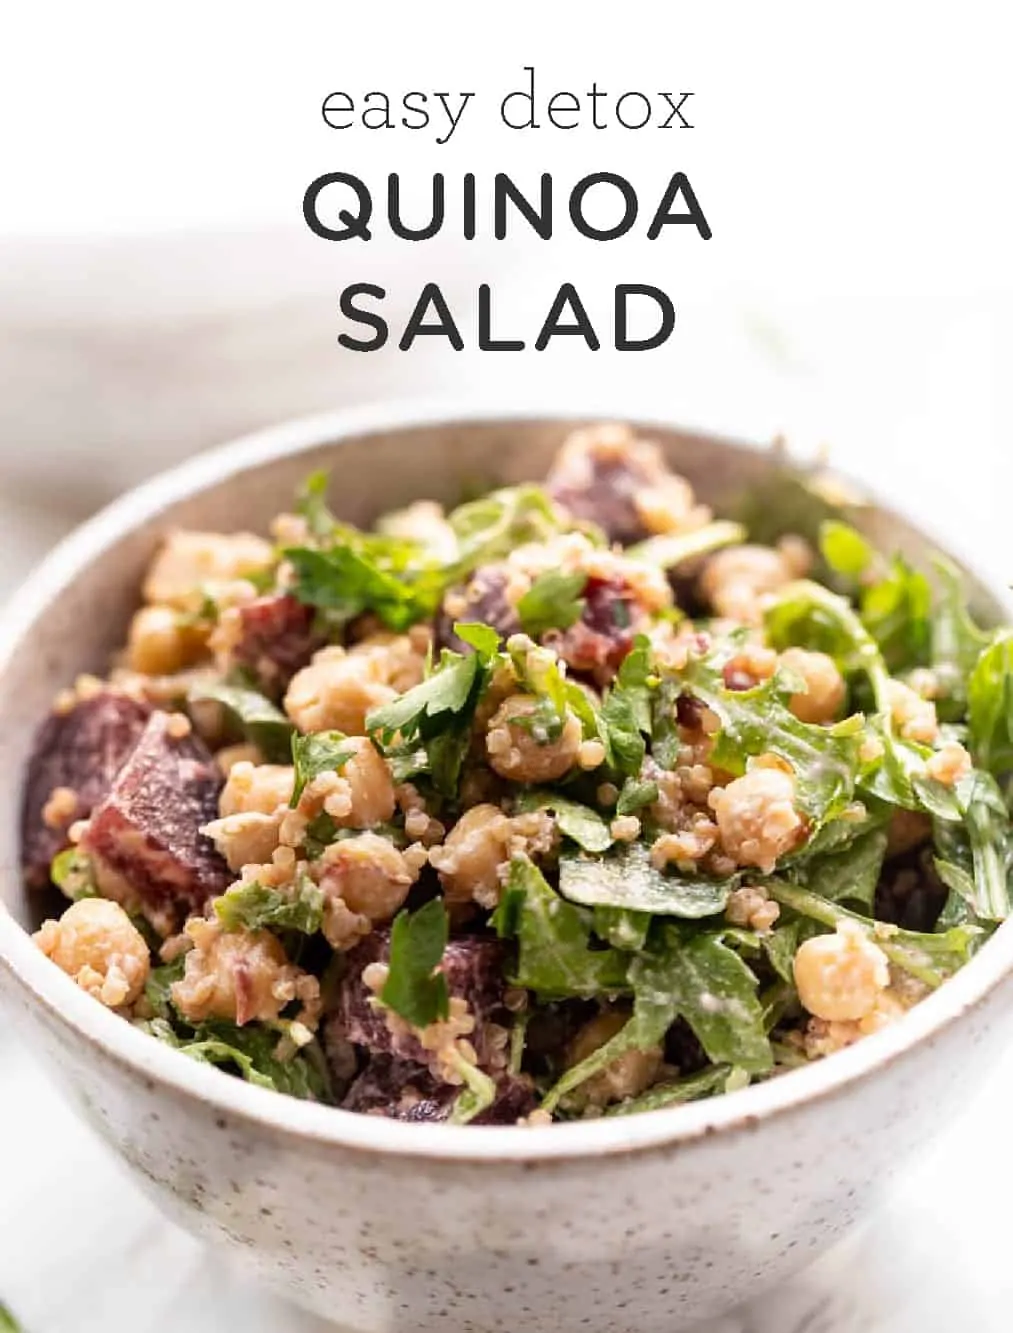 Easy Detox Quinoa Salad Recipe | 10 Minutes or Less - Simply Quinoa